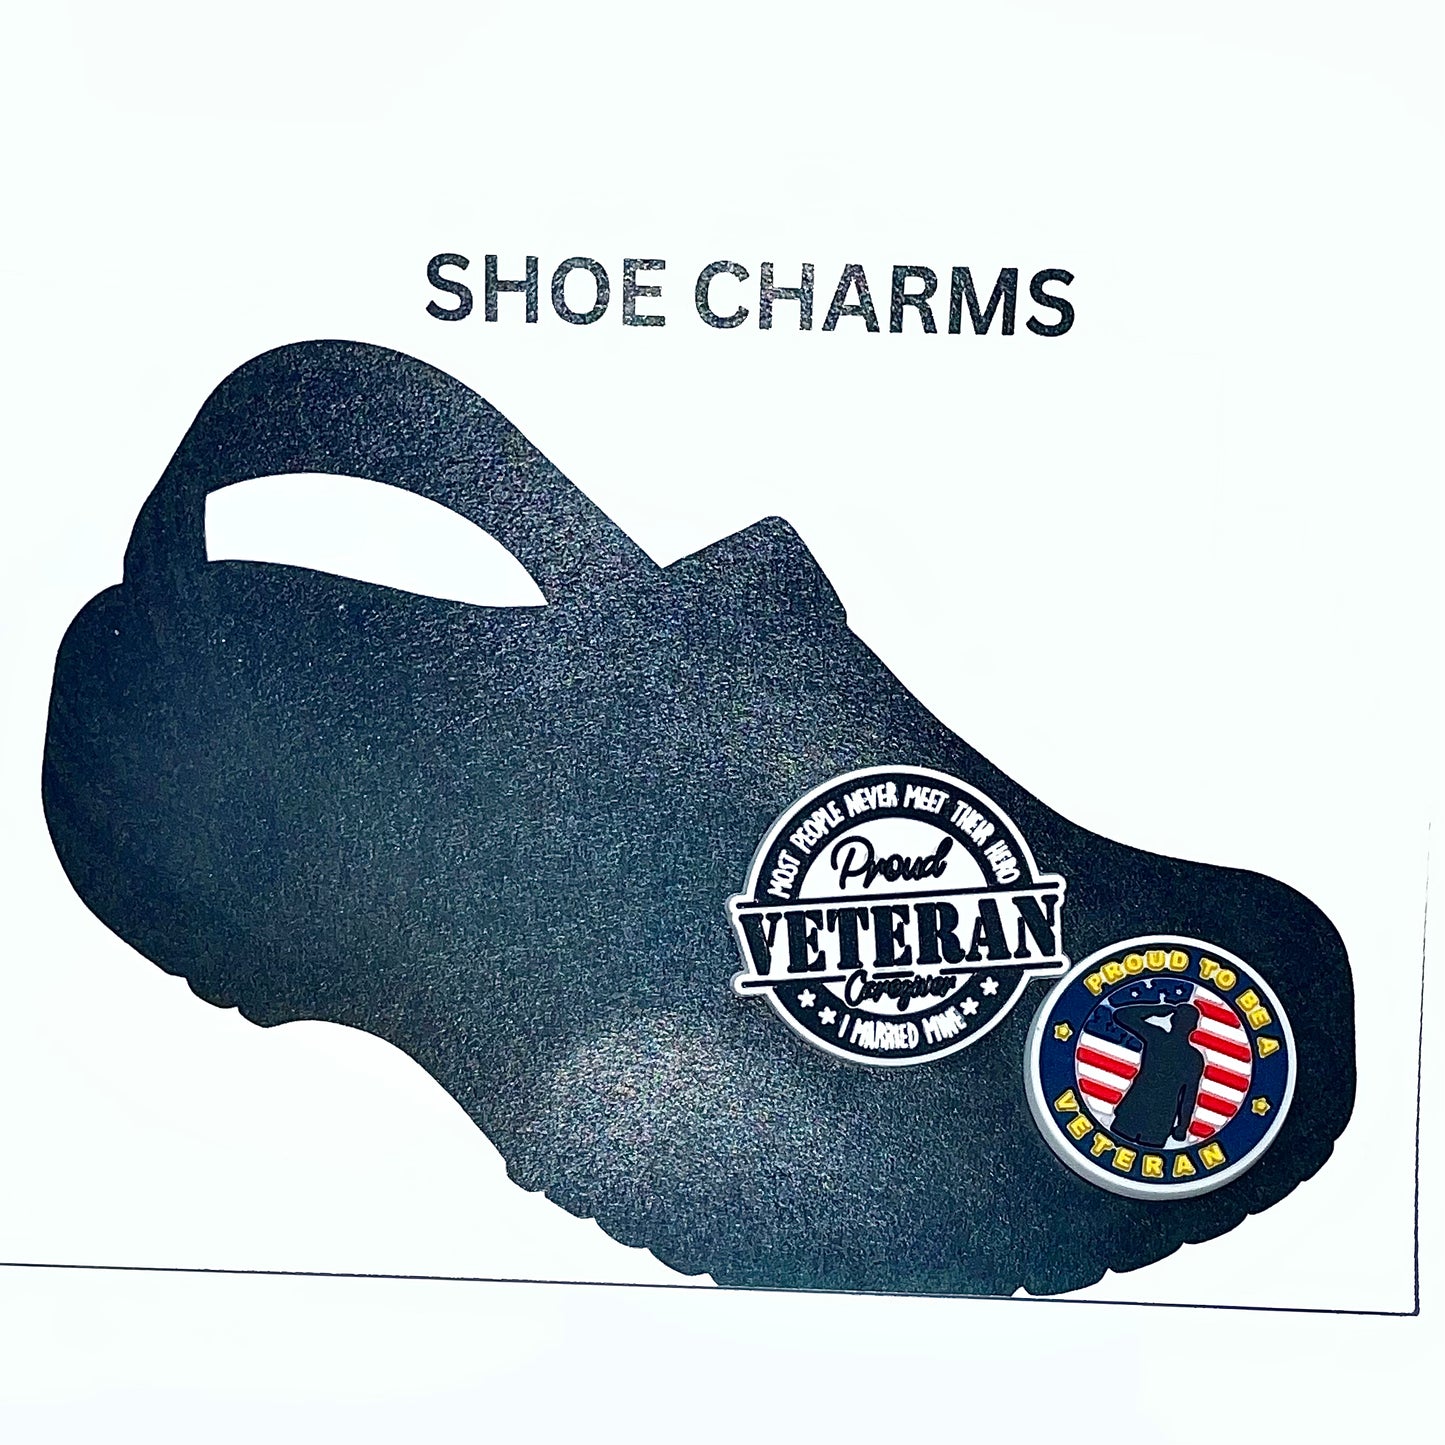 Veteran Service Shoe Charms